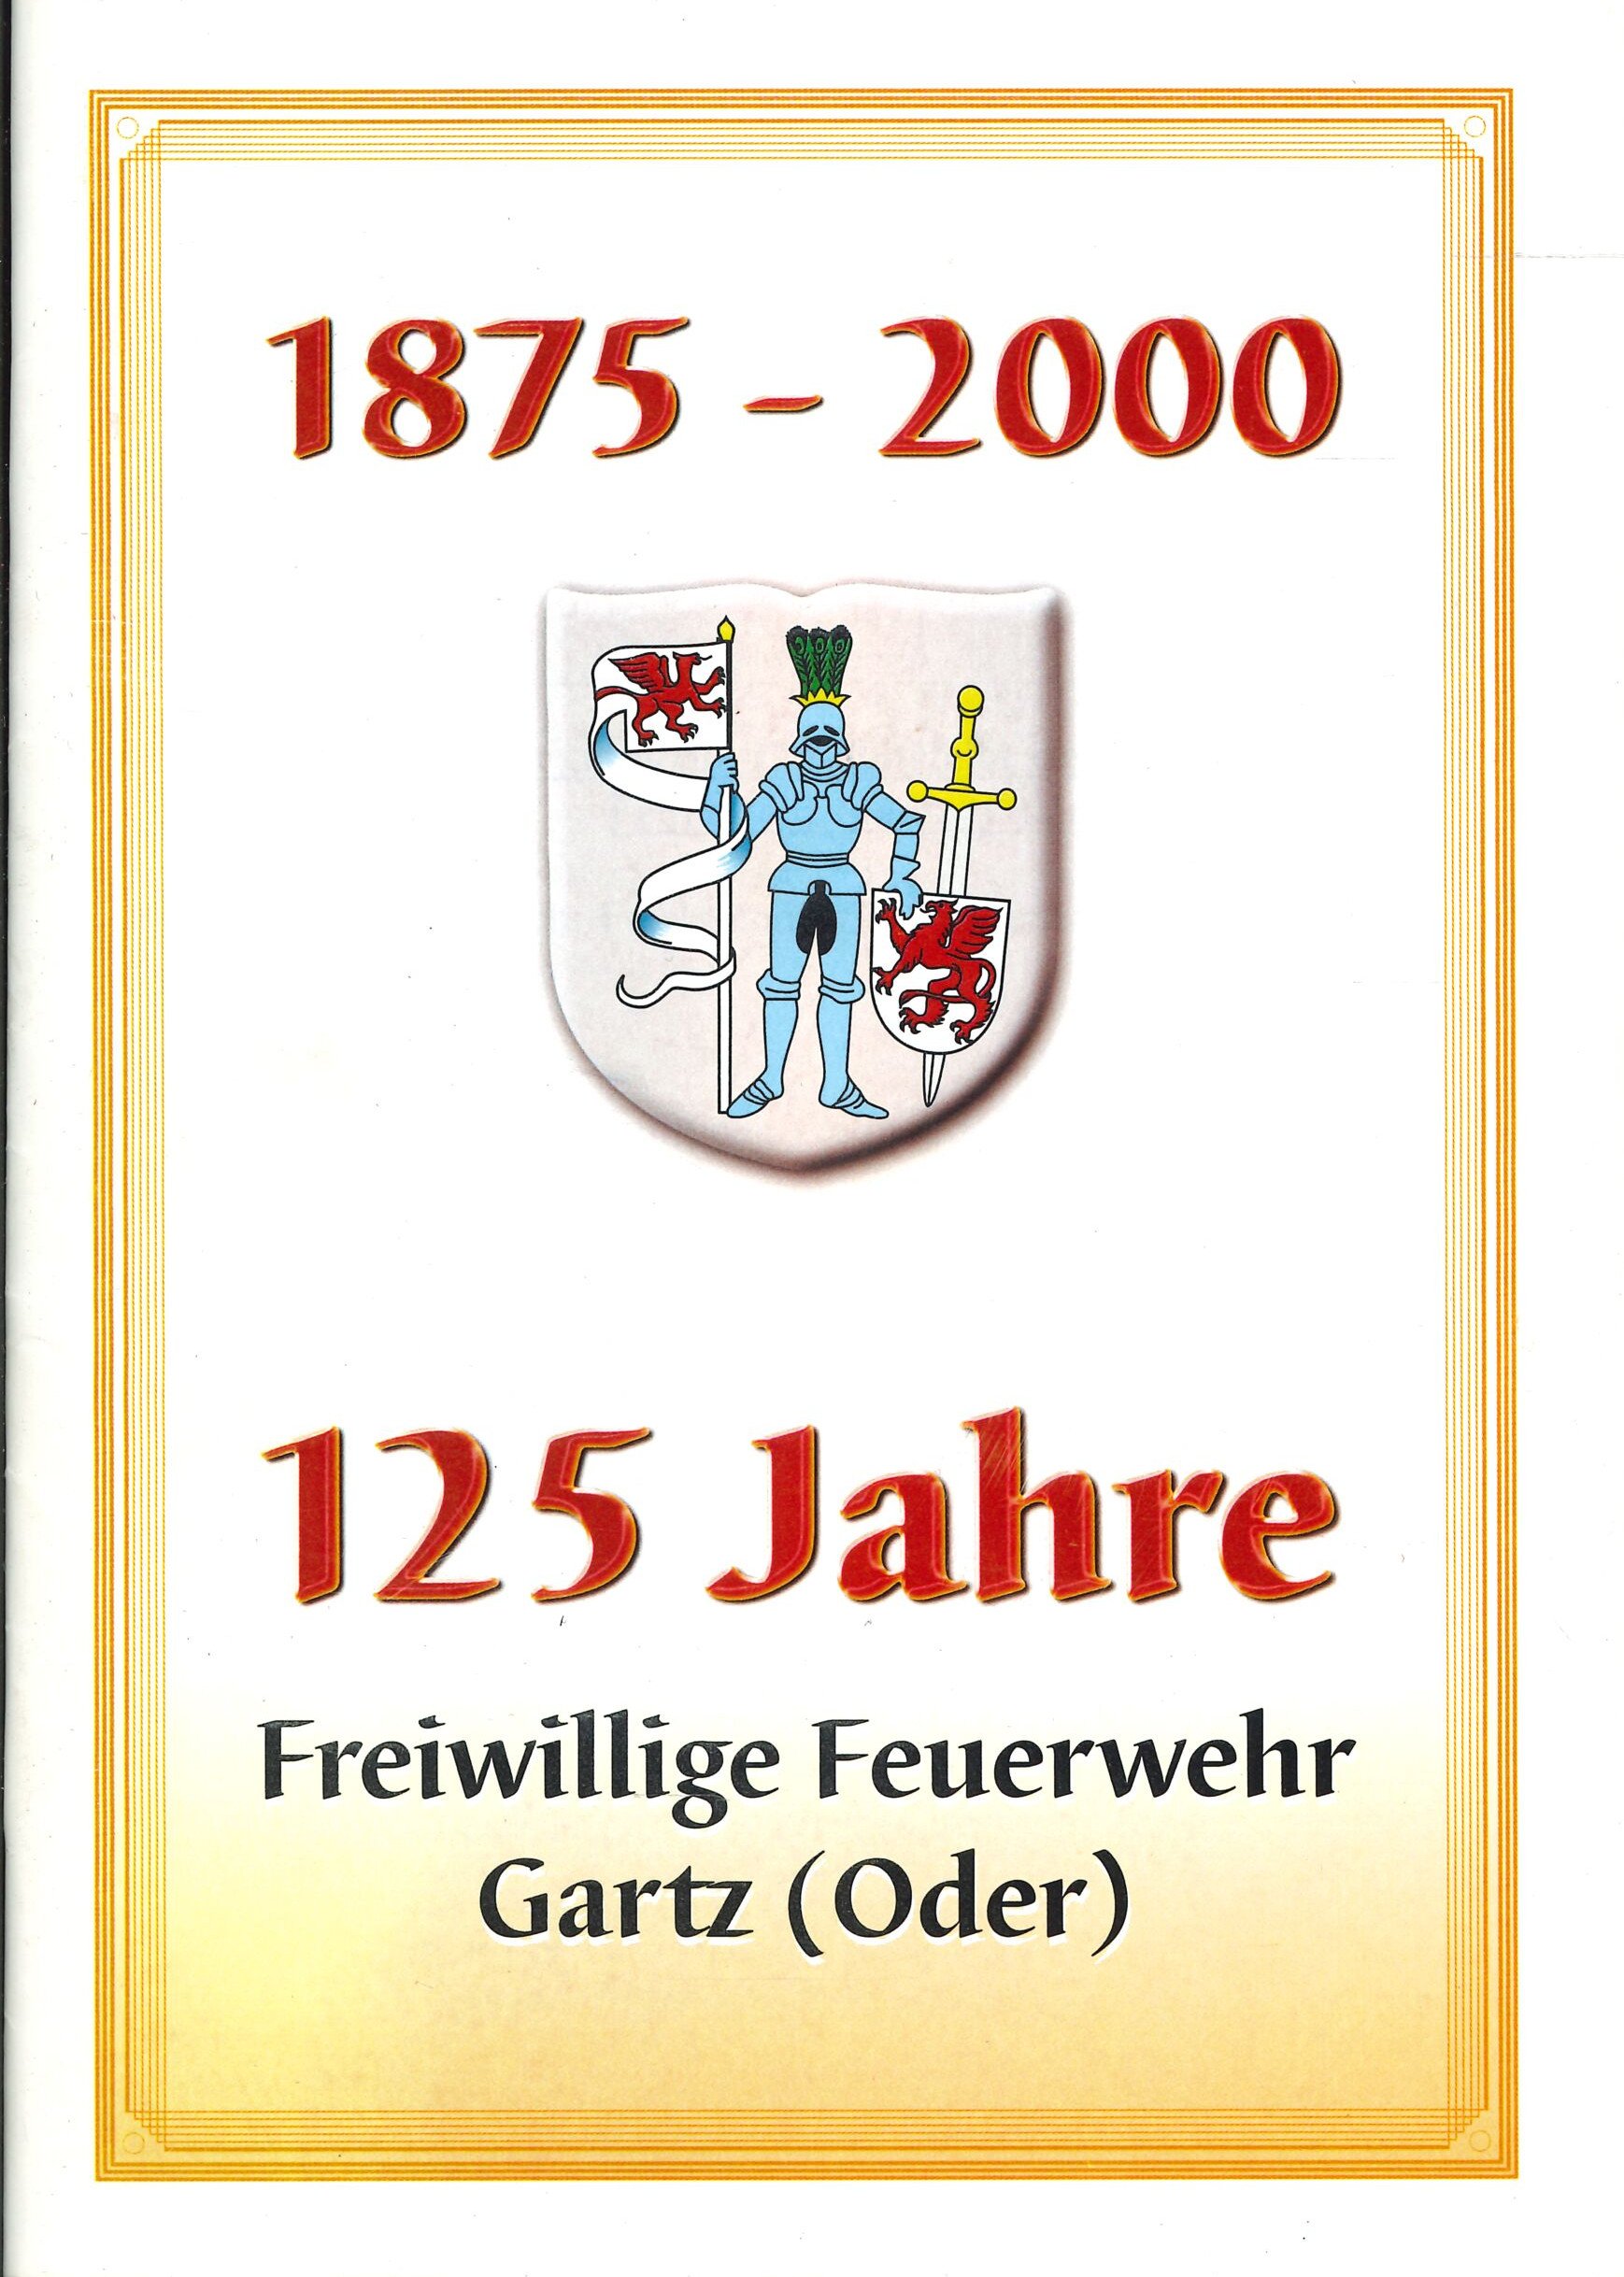 Festschrift FF Gartz (Oder) (Feuerwehrmuseum Grethen CC BY-NC-SA)